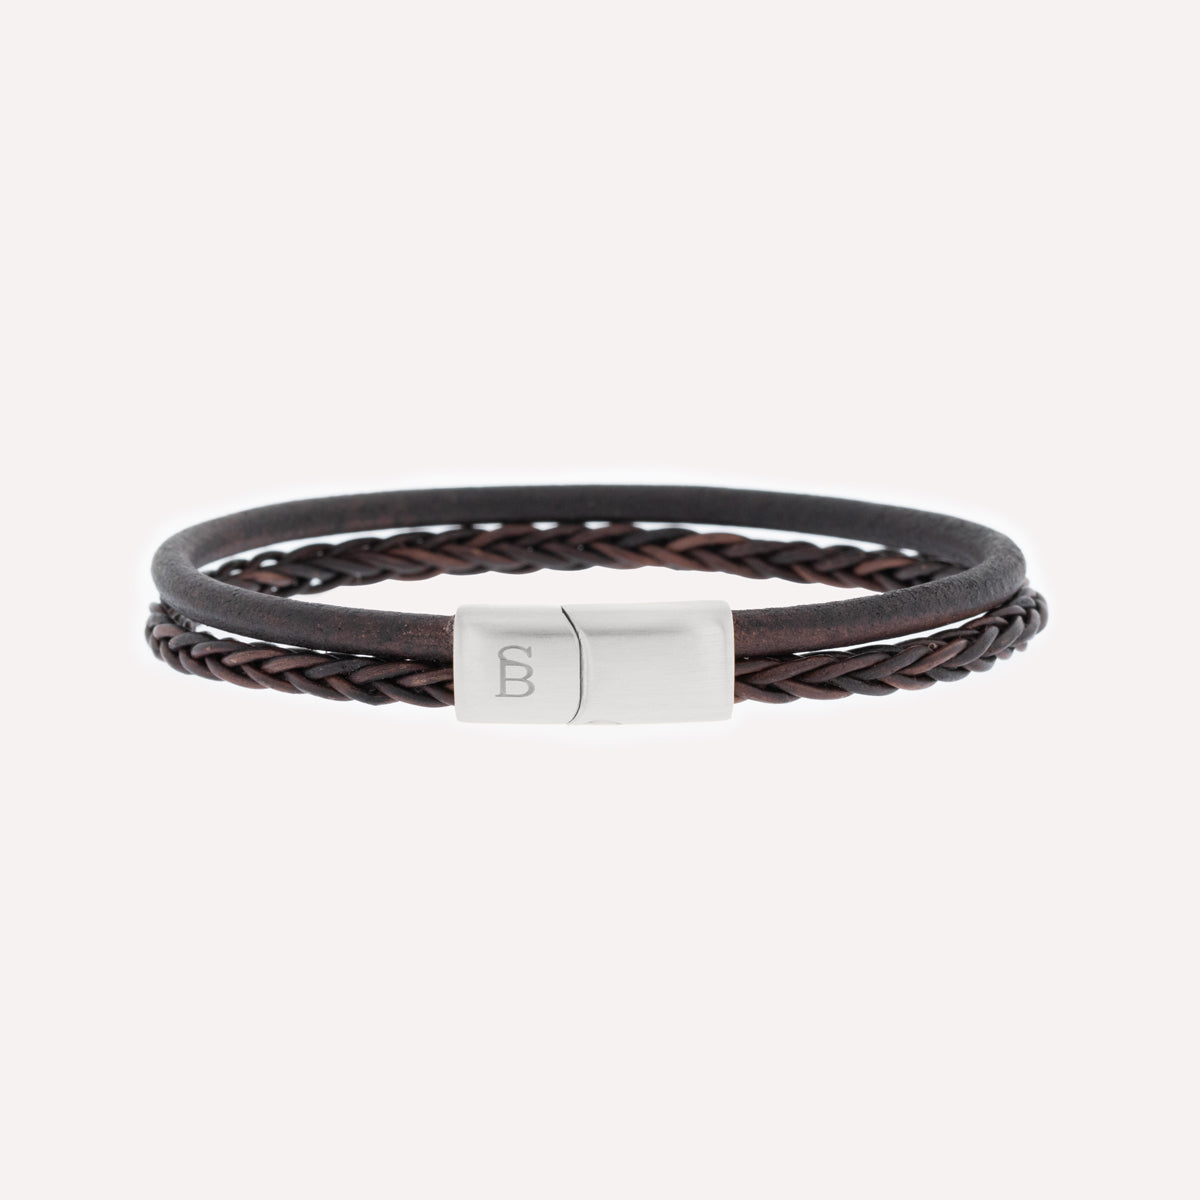 Denby Leather Bracelet Brown